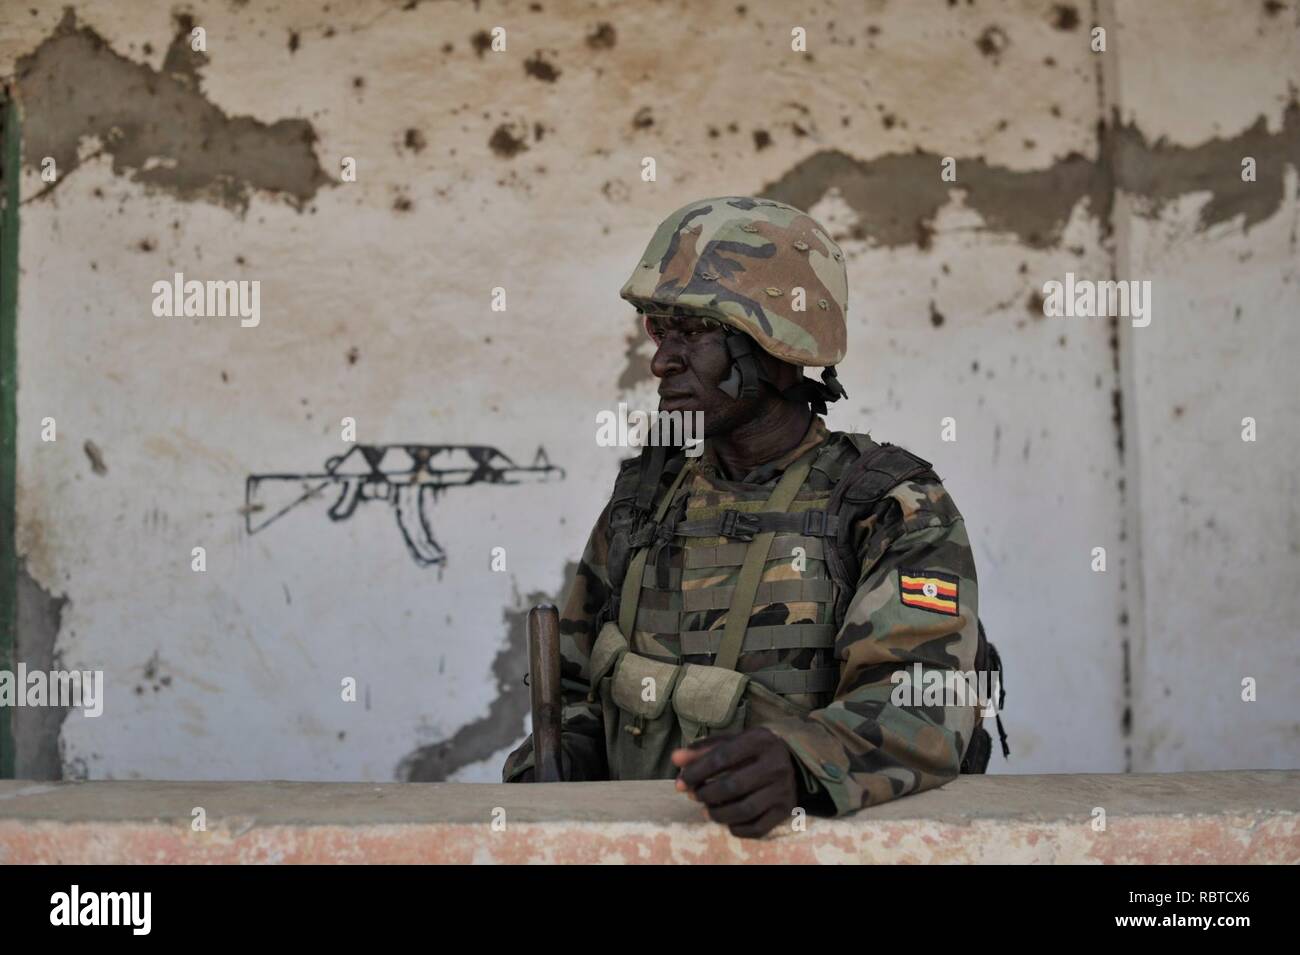 Un soldat ougandais, dans le cadre de la Mission de l'Union africaine en Somalie, se trouve à l'extérieur une ancienne caserne al Shabab 29 avril à Qoryooley, Somalie, un peu plus d'un mois après la ville fut prise (13894448048). Banque D'Images